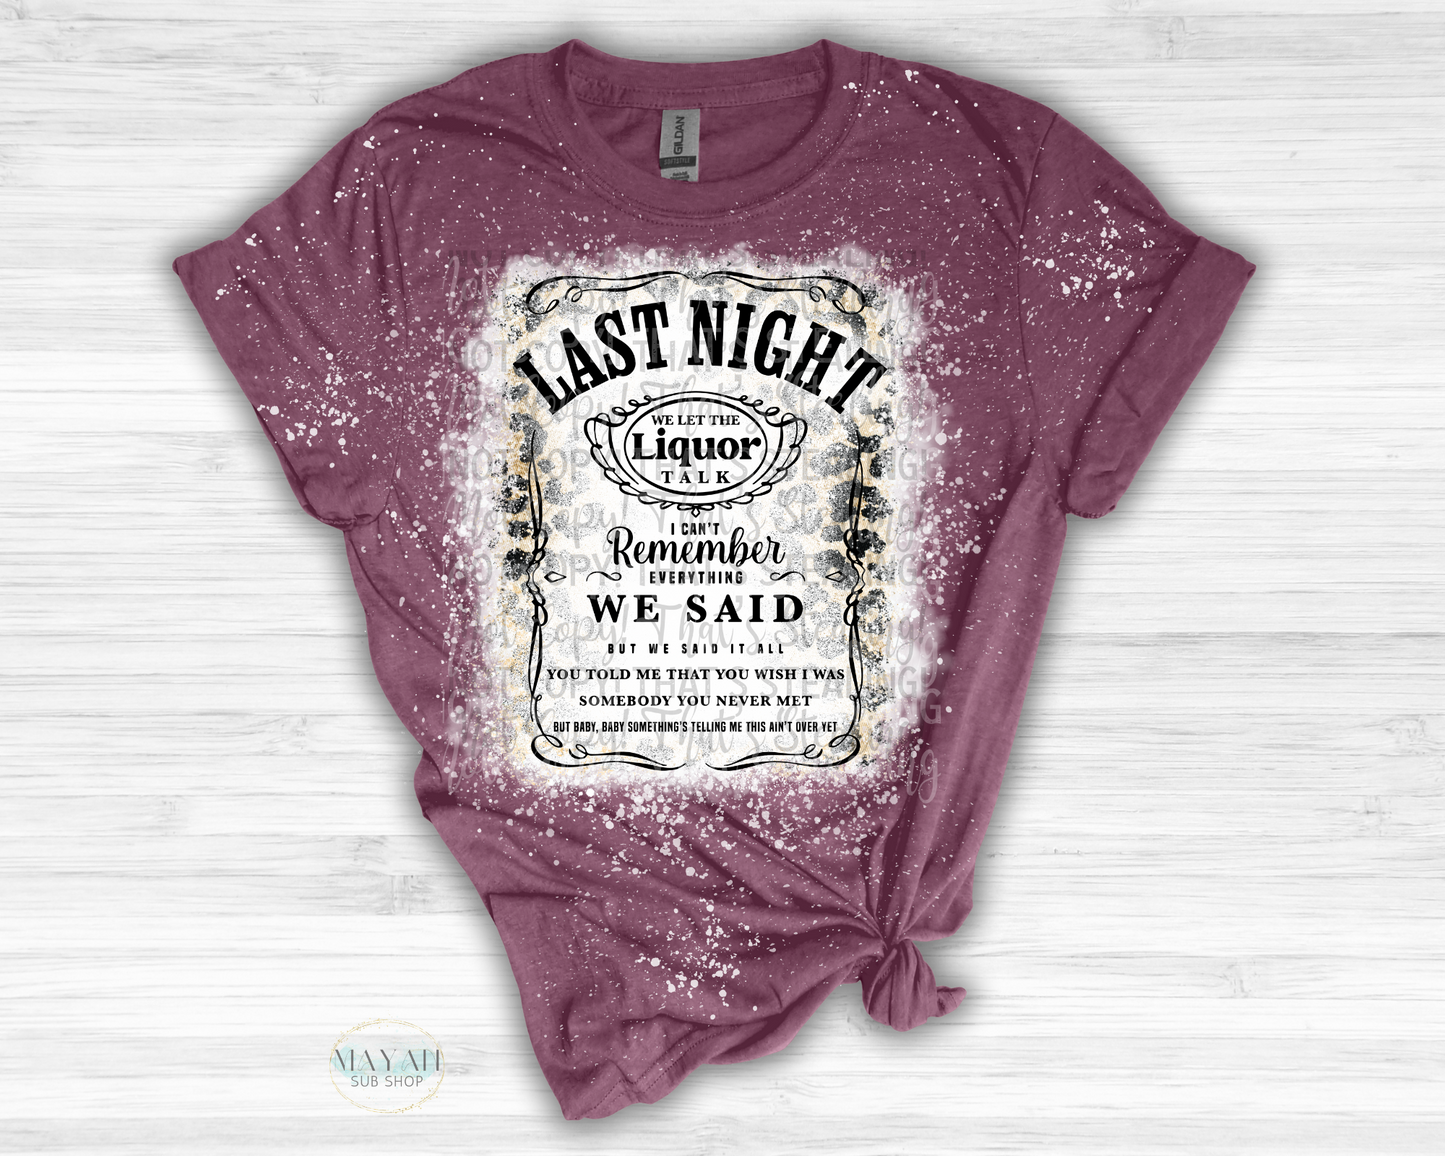 Last Night Talk Bleached Shirt - Mayan Sub Shop